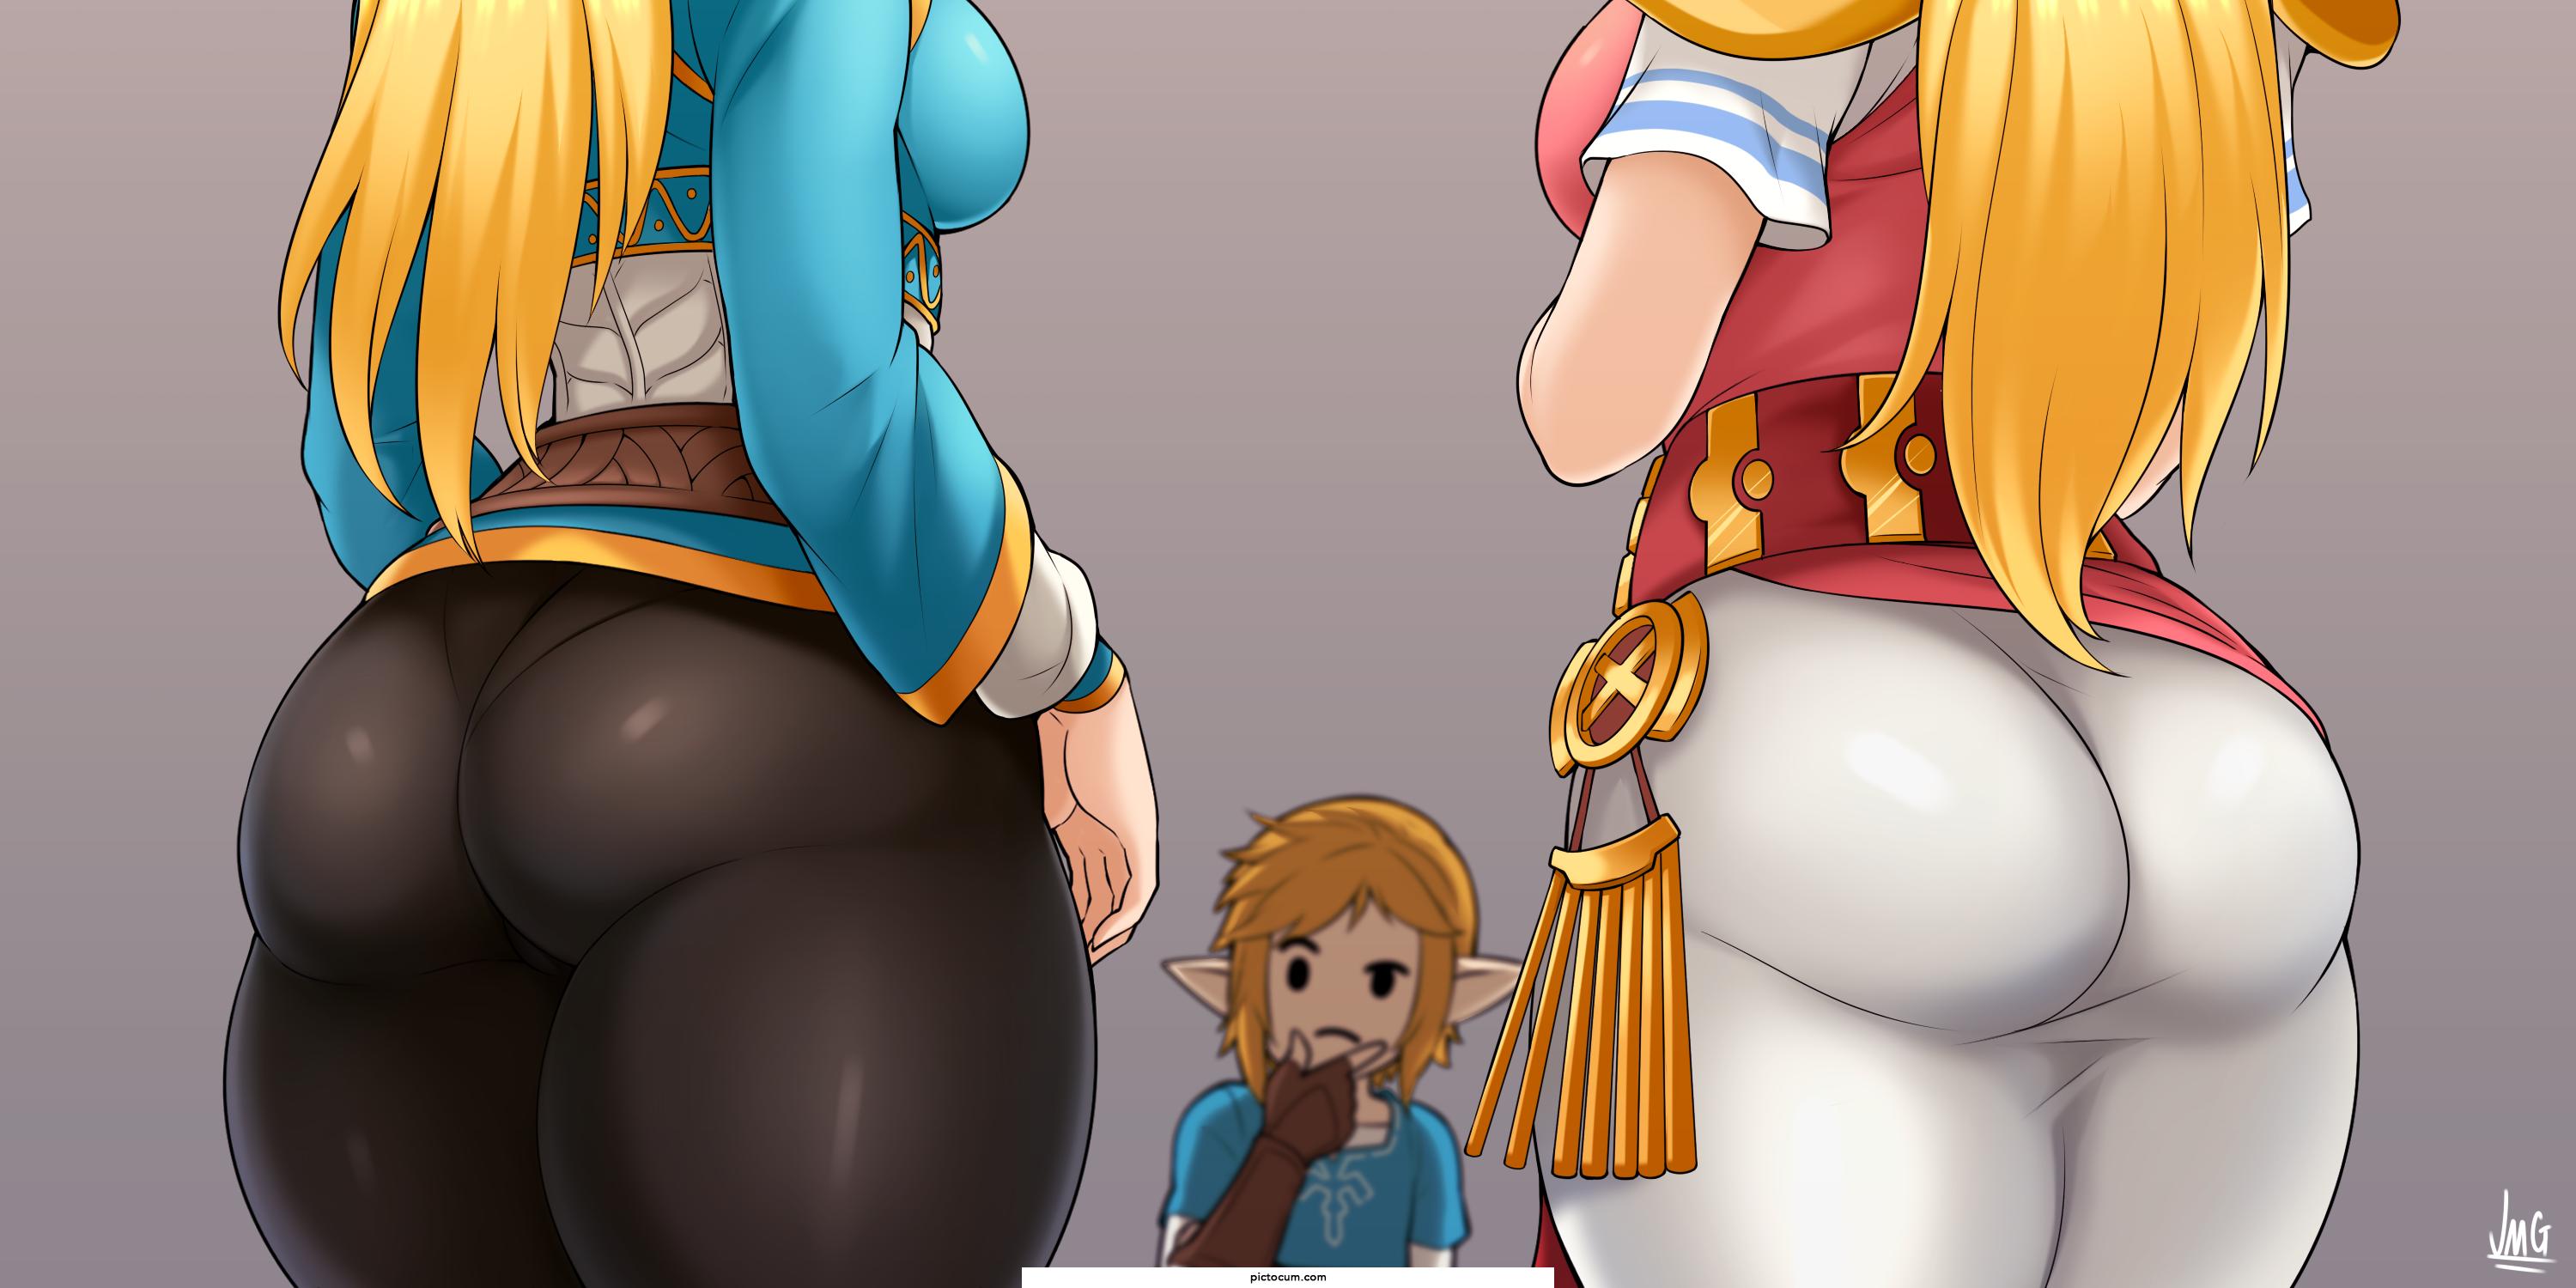 Zelda or Zelda?